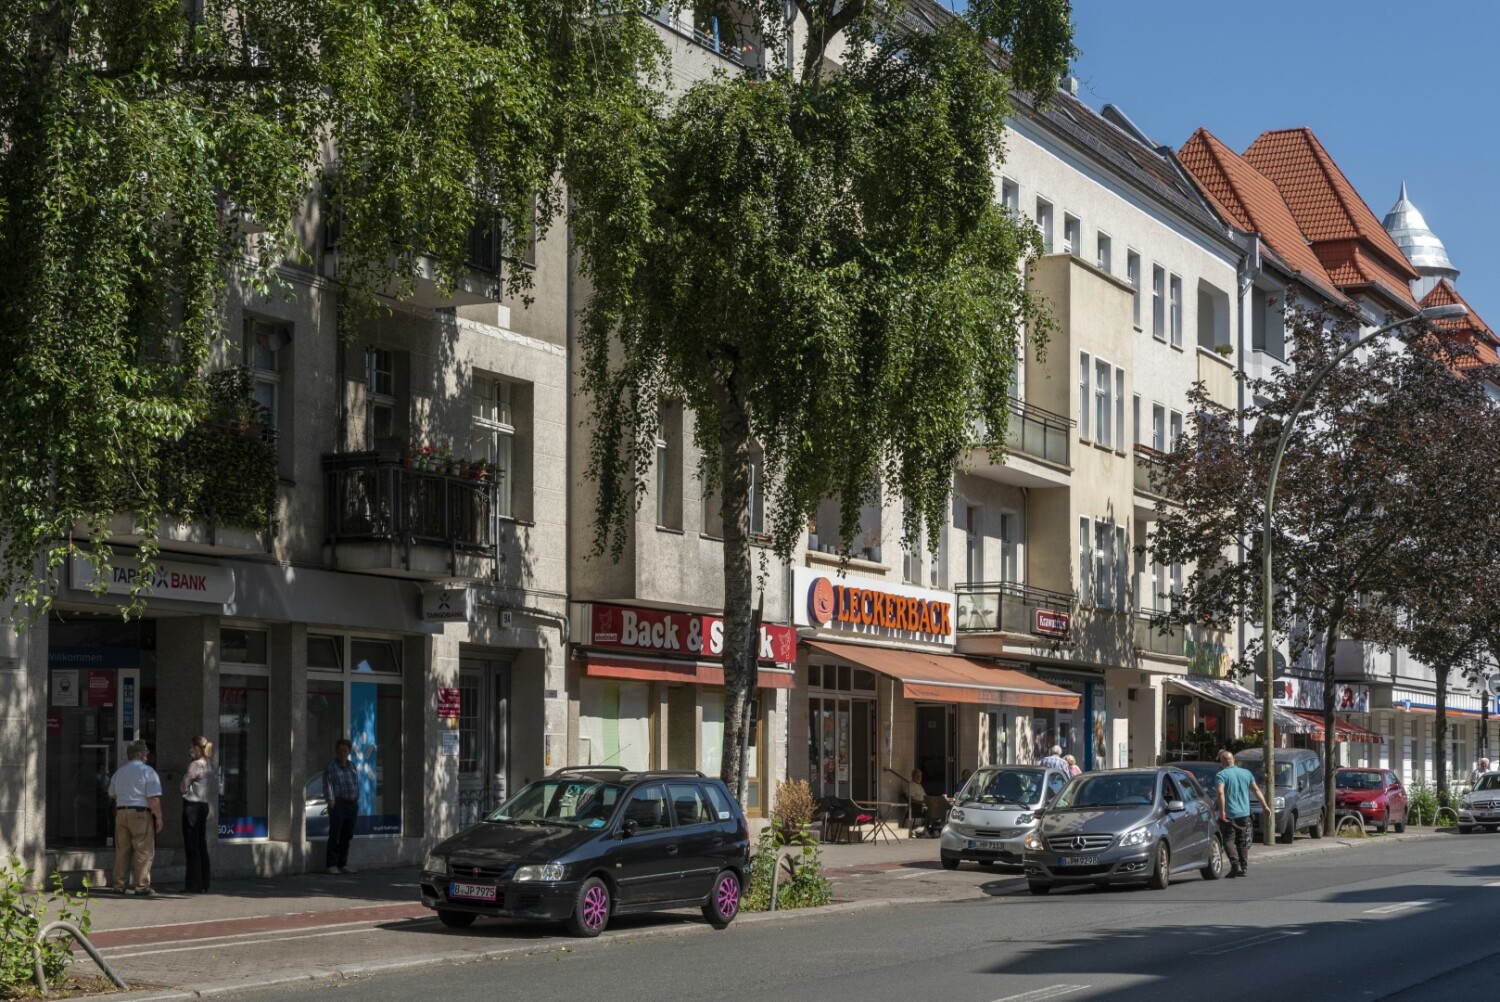 Straßenzug Baumschulenstraße im Fördergebiet Baumschulenstraße/Köpenicker Landstraße